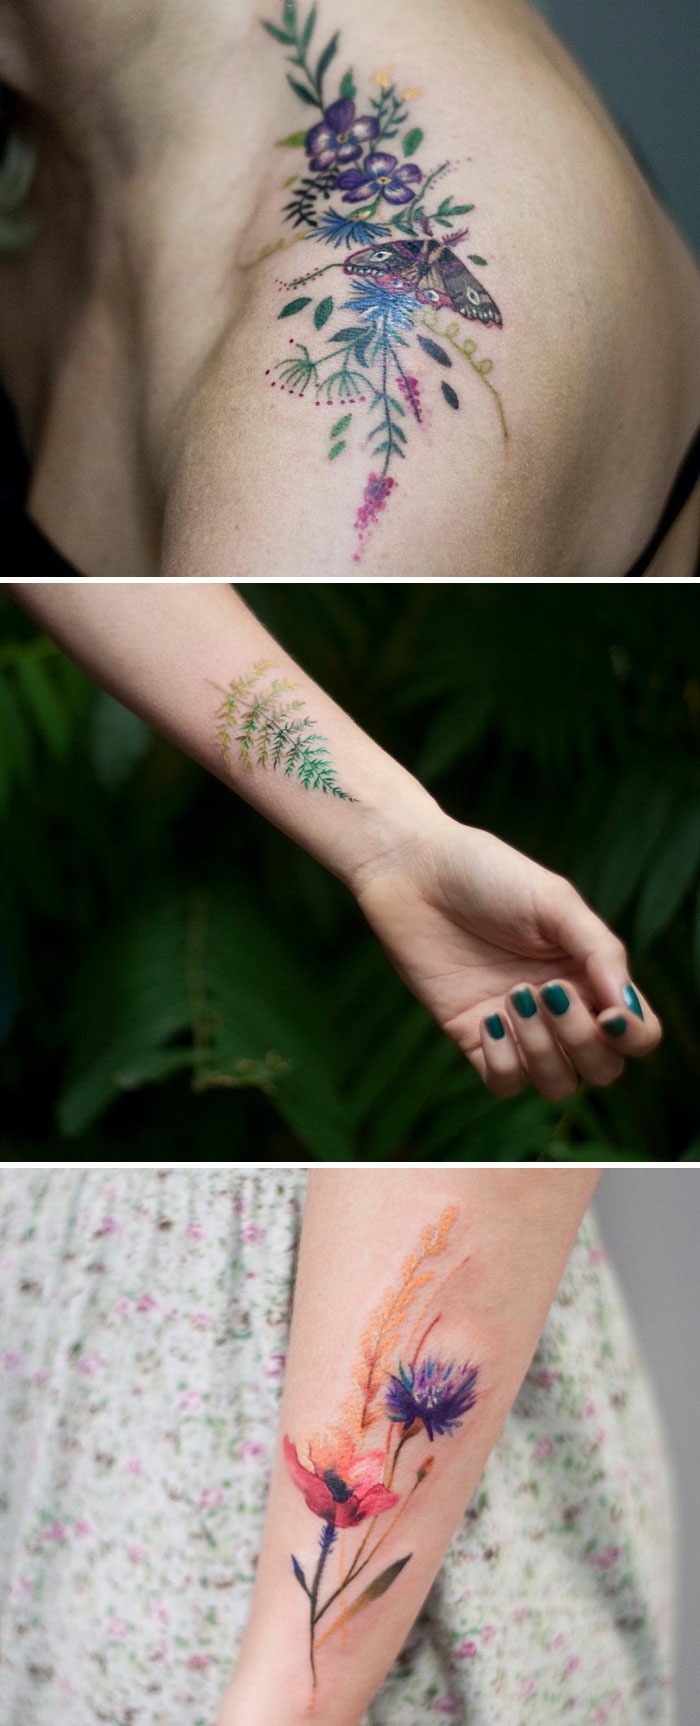 bunte pfingstrosen tattoo ideen und vorlagen, bunte verzierung am körper, frauentattoos designs 